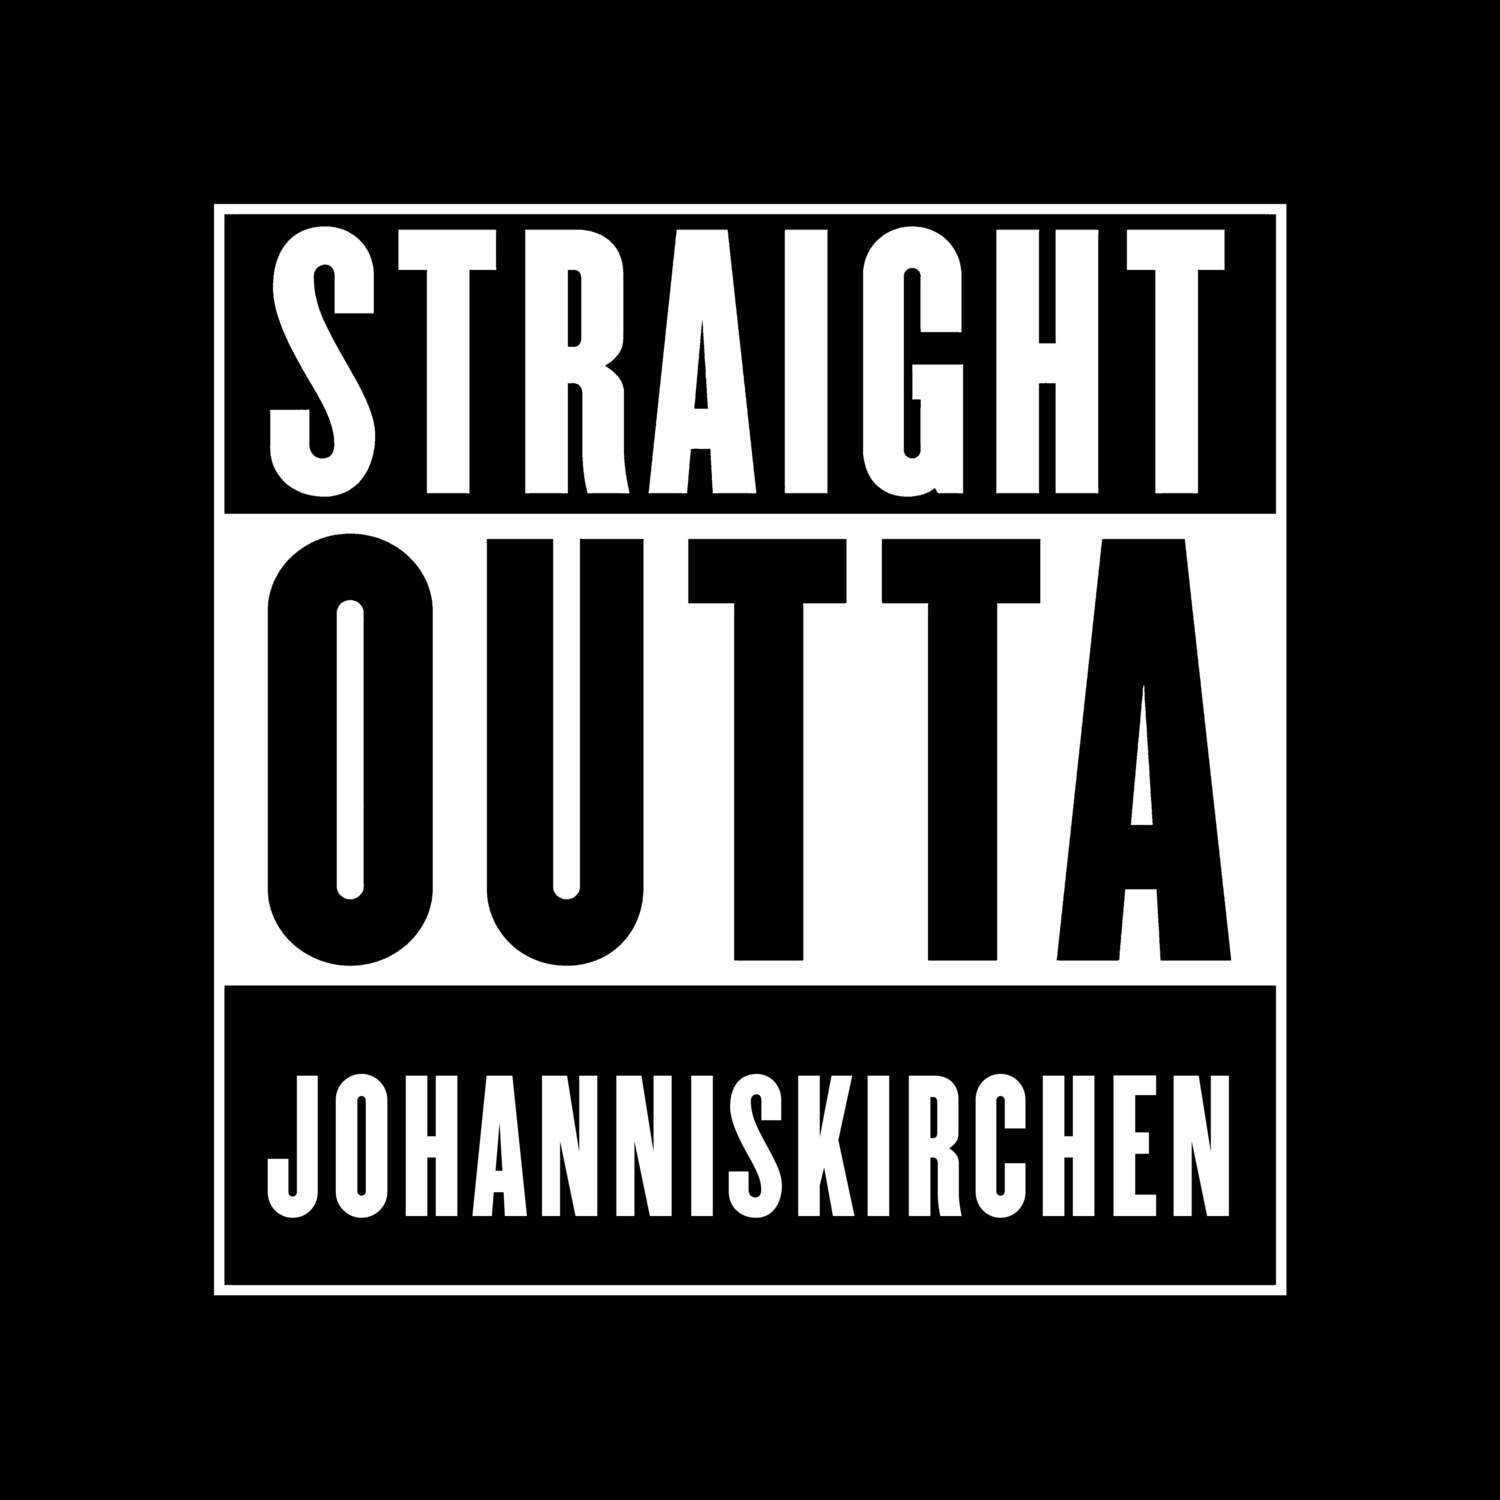 Johanniskirchen T-Shirt »Straight Outta«